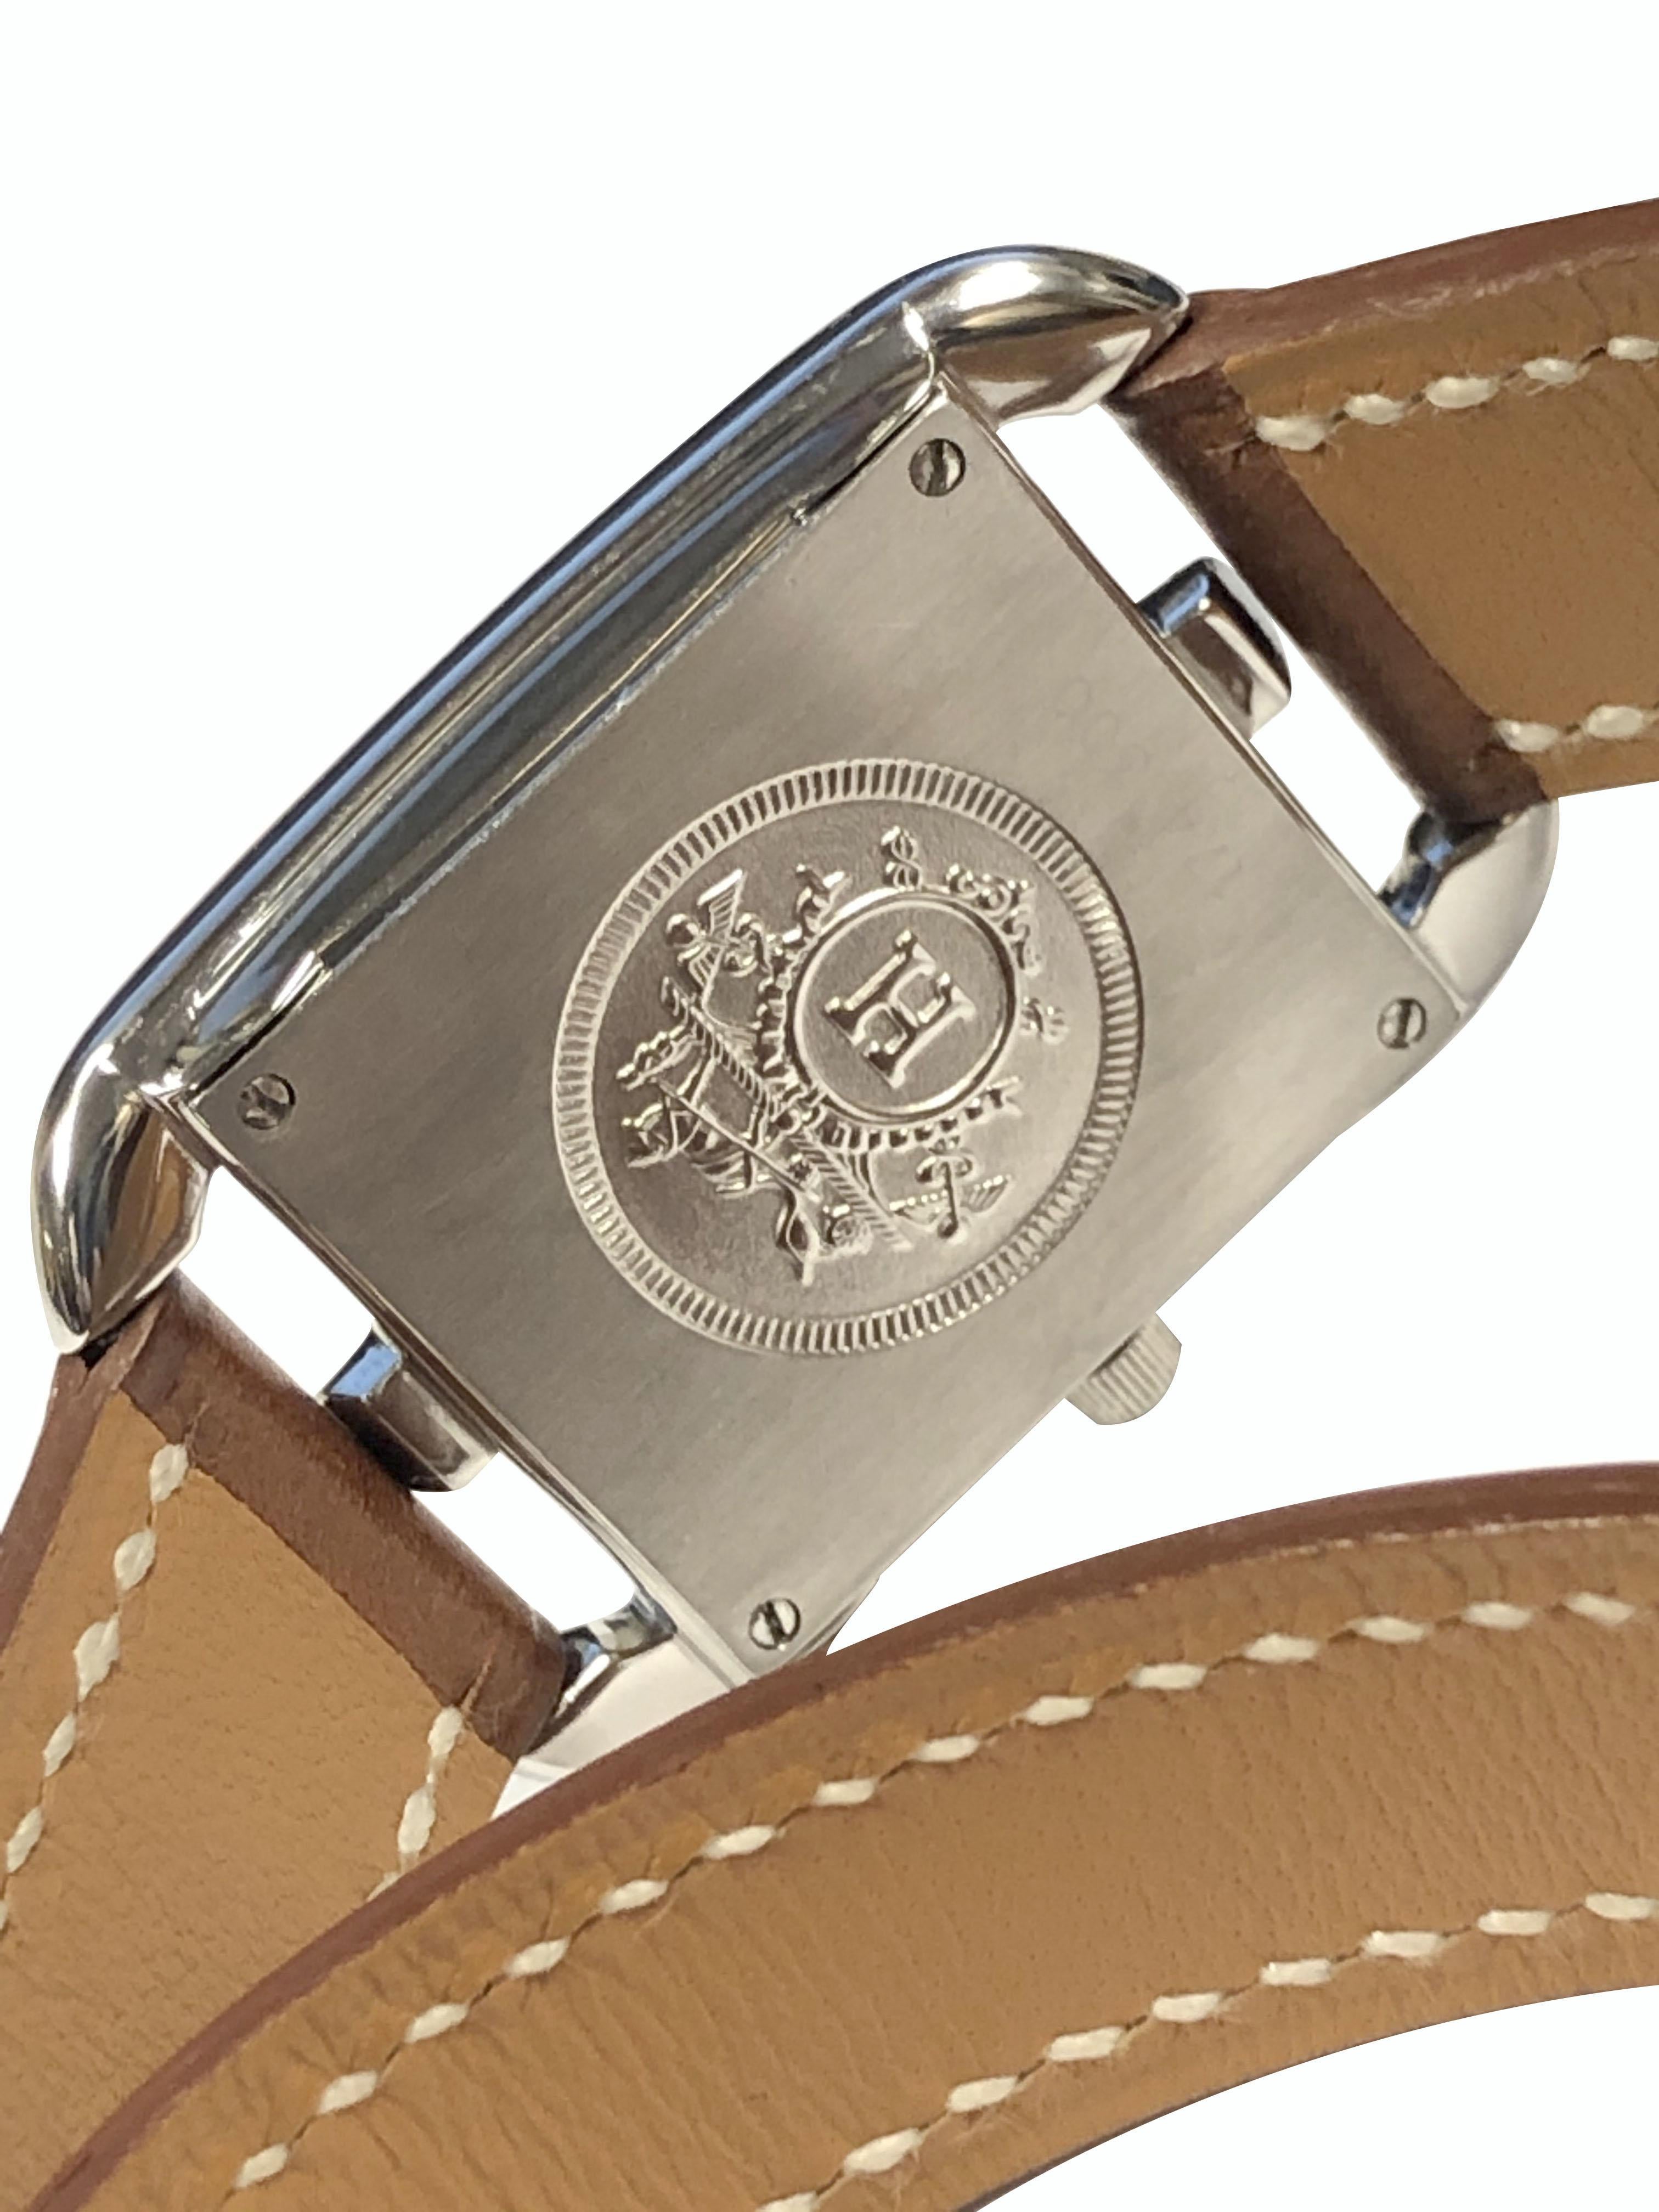 Circa 2015 Hermes Cape Cod Ladies Wrist Watch, 22 X 23 M.M. Boîtier 2 pièces en acier inoxydable, mouvement à quartz, cadran argenté avec index argentés. Courroie double de tour en marron clair. Récemment révisé et livré avec une garantie d'un an. 